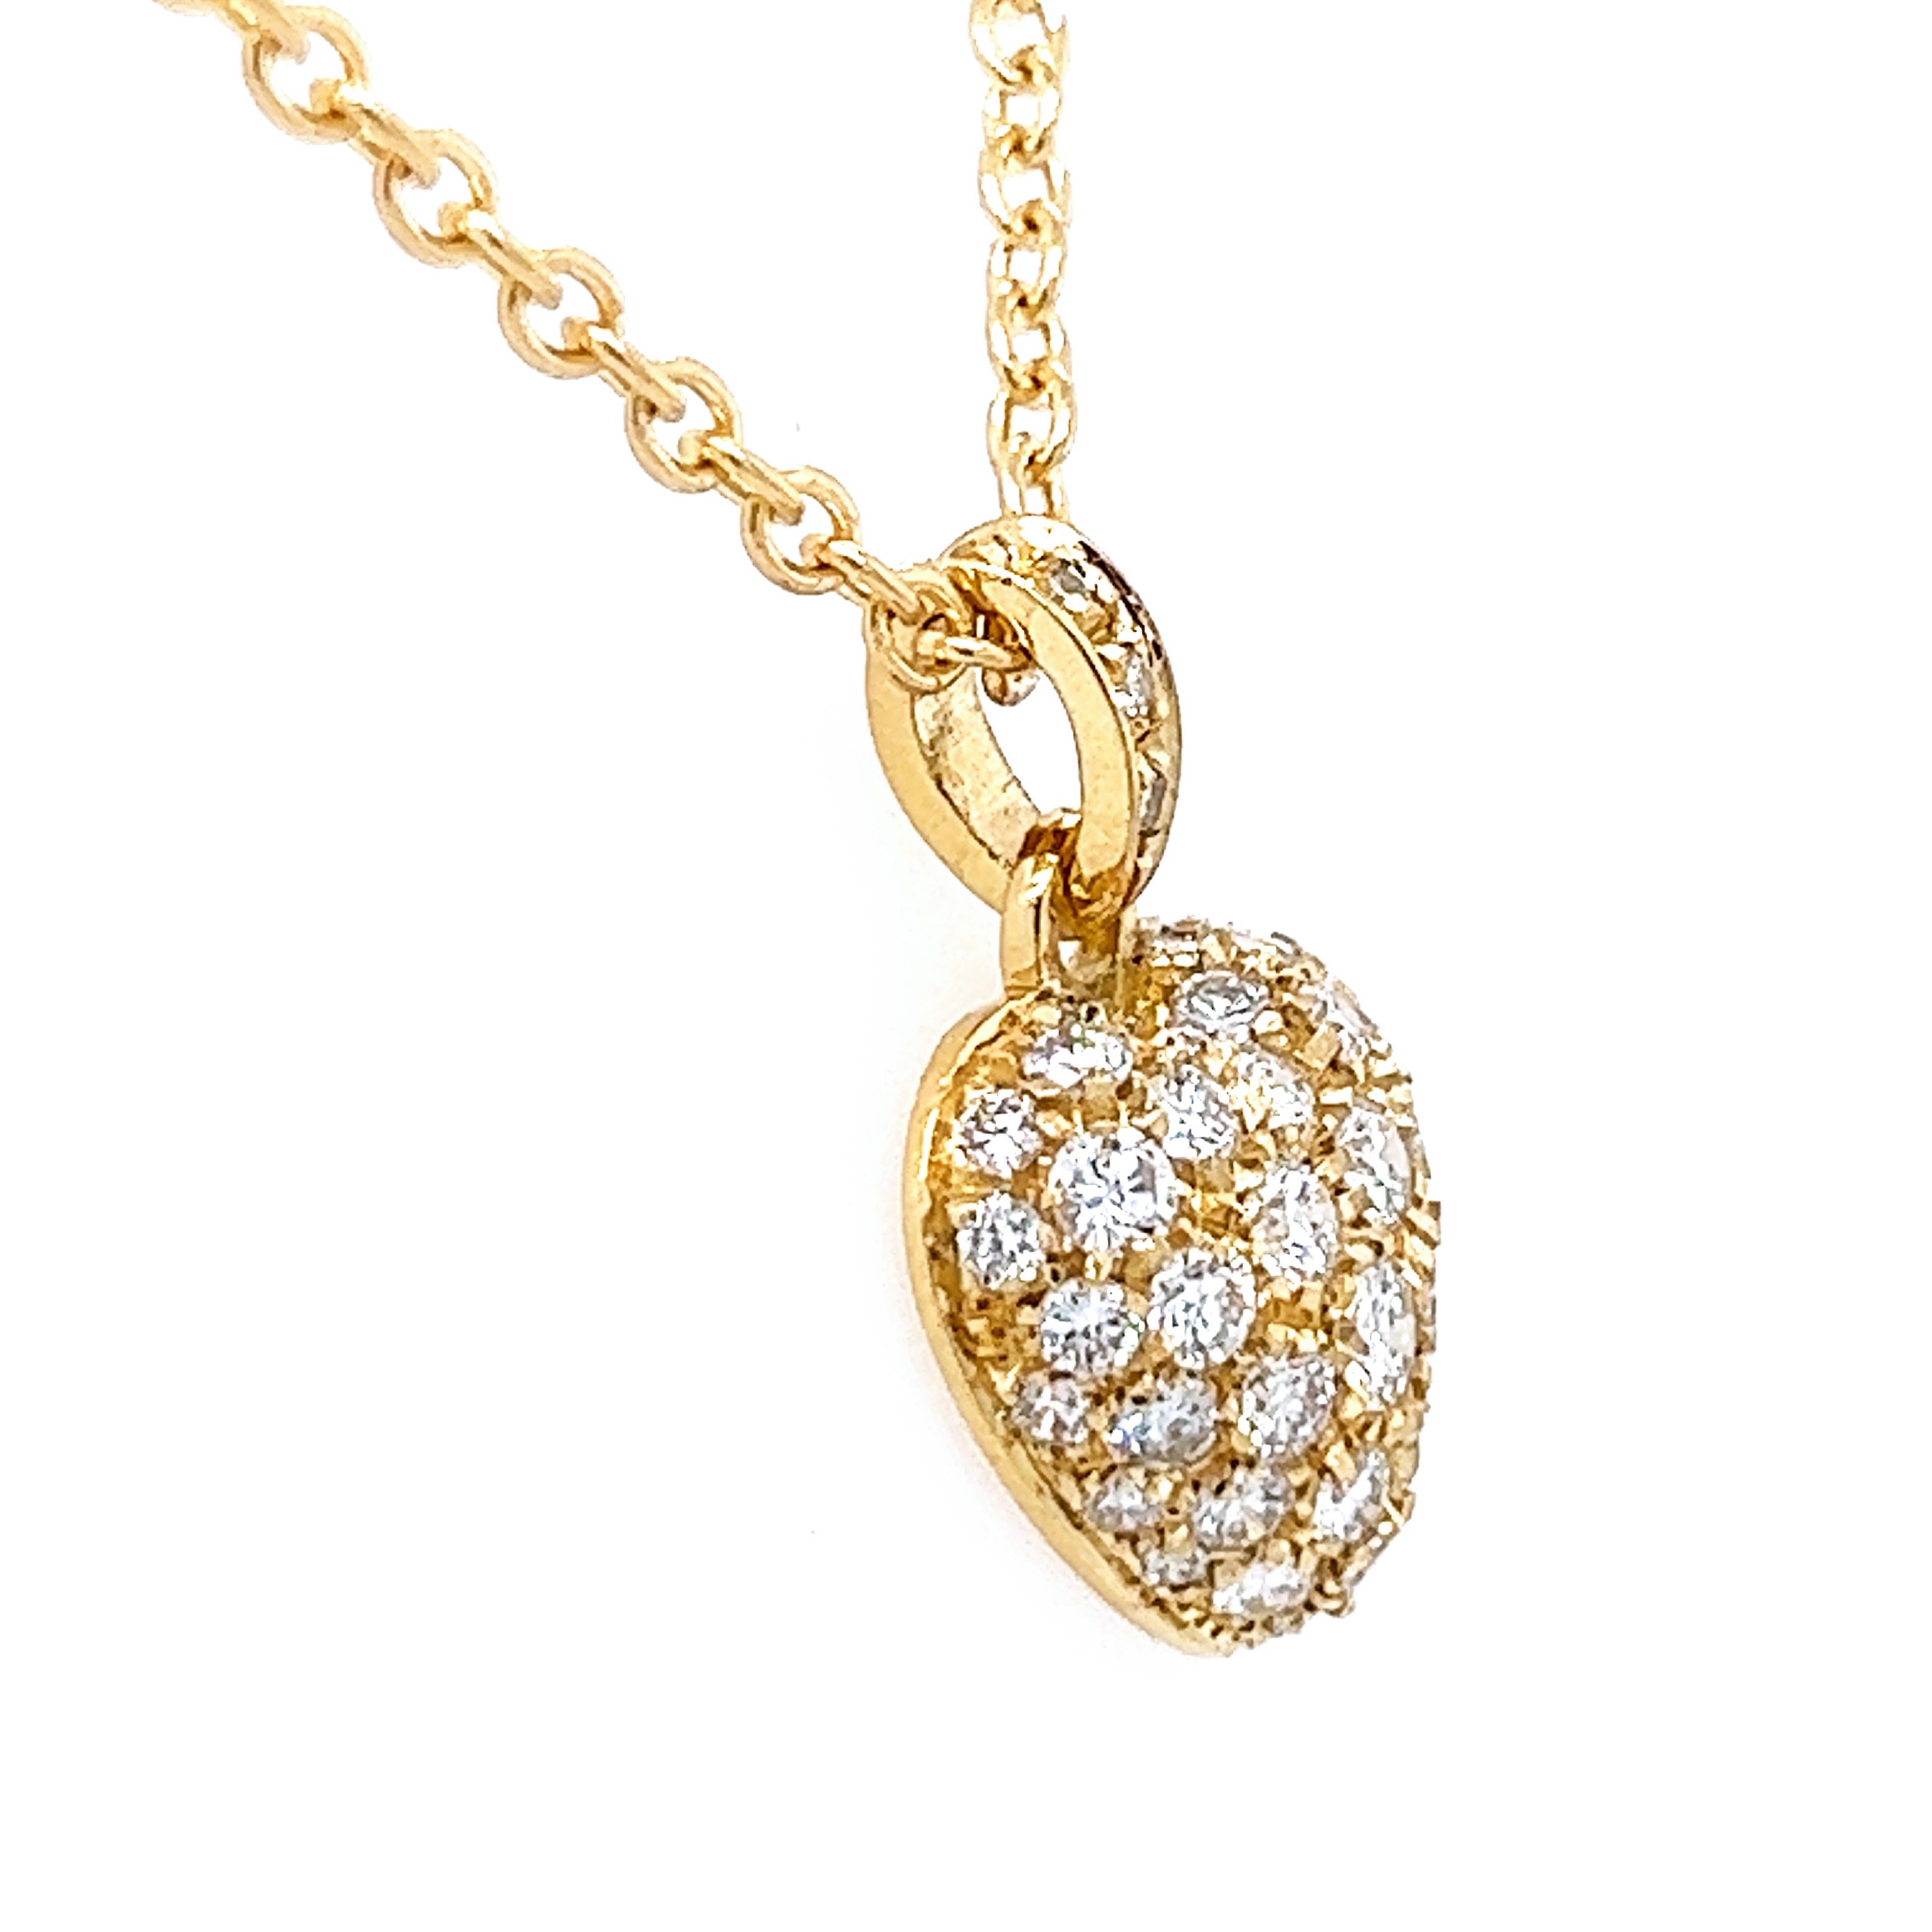 Taille brillant Cartier, collier à pendentif cœur original en or jaune 18 carats et diamants blancs, 1990